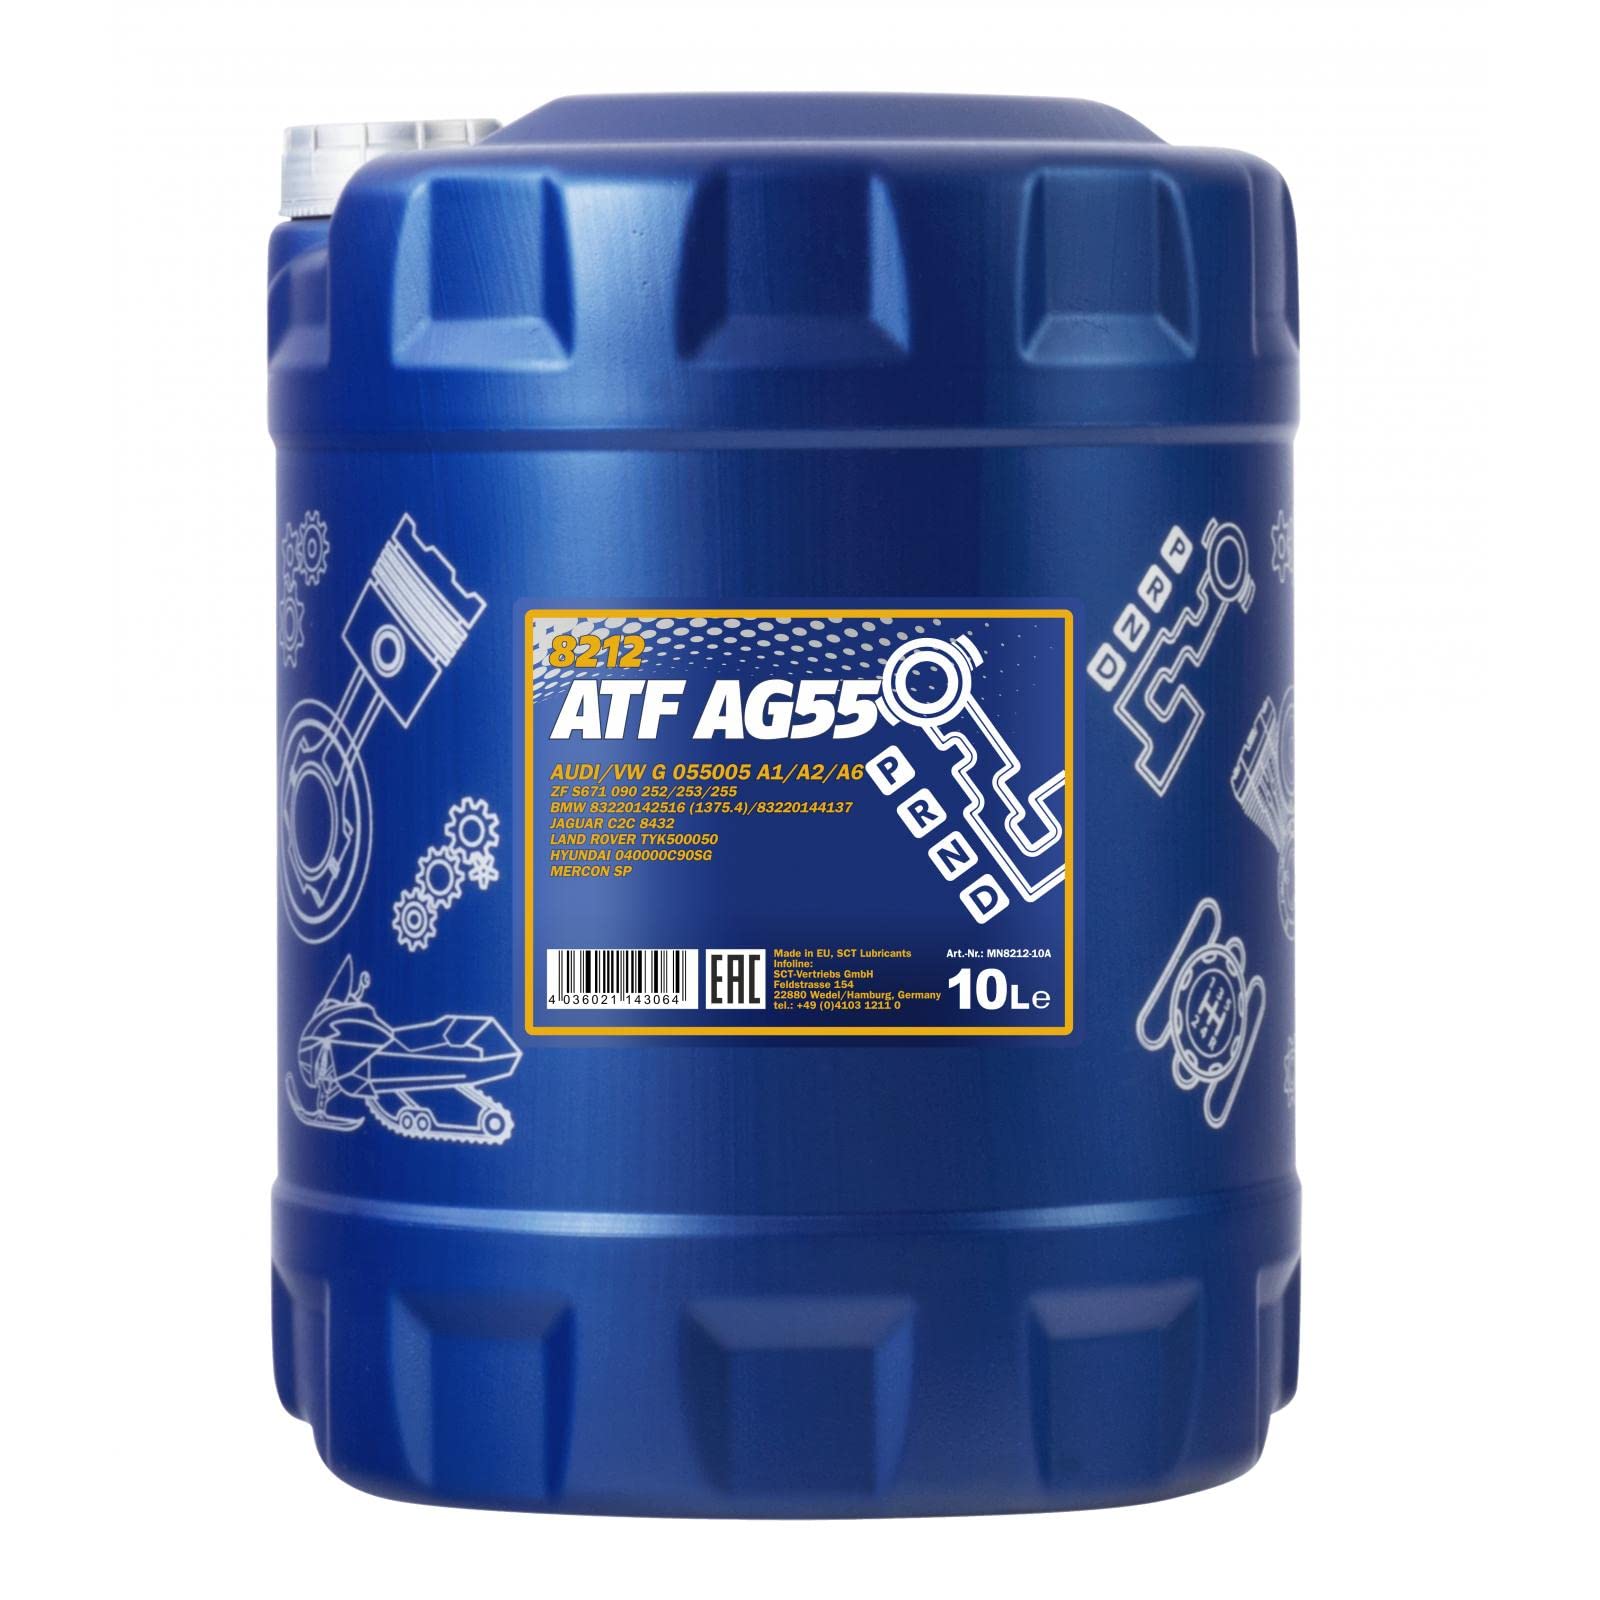 10 Liter MANNOL Hydrauliköl ATF AG55 Hydraulic Fluid Automatikgetriebeöl Gear